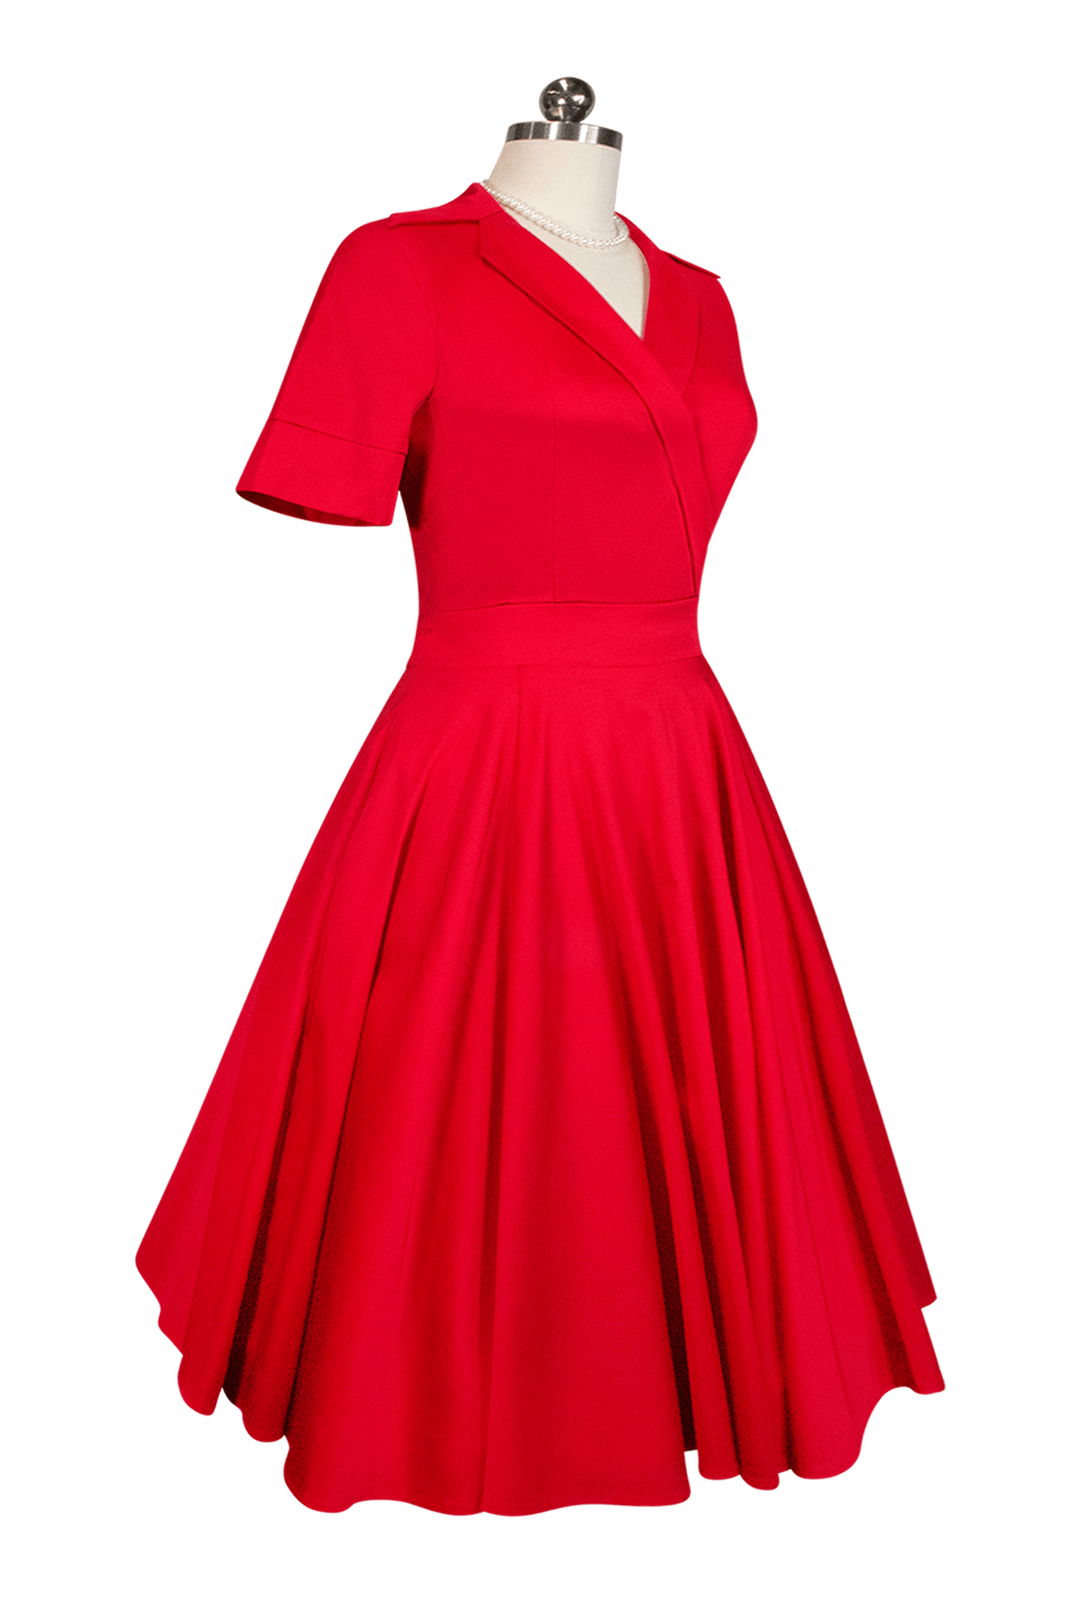 Tea Rose Collar Dress (Red) - Kitten D'Amour